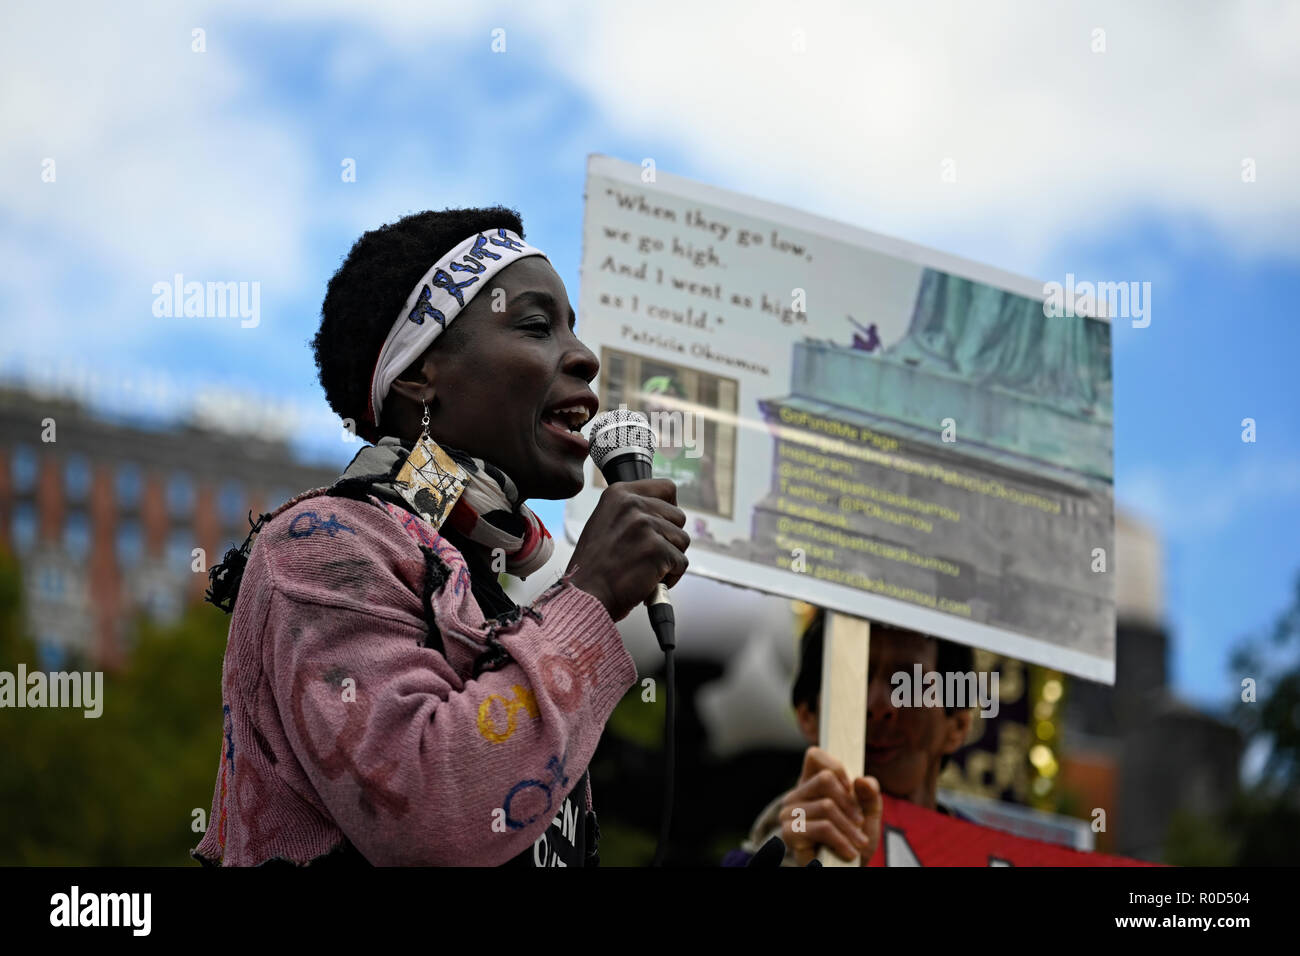 Nueva York, EE.UU. 03 de noviembre de 2018. La estatua de la libertad escalador Patricia Okoumou habla durante una protesta contra las políticas de inmigración de la administración Trump. El evento, tres días antes de las elecciones de medio término de Estados Unidos, fue patrocinada por varios grupos, incluyendo NYC socialistas democráticos de América y la Organización Internacional Socialista. Okoumo, oriundo de la República del Congo, escalan el pedestal de la Estatua de la Libertad, el 4 de julio de 2018, para protestar contra la separación de familias en la frontera. Ella se enfrenta a un juicio por varios cargos en la corte federal en Nueva York el 17 de Dic. Foto de stock